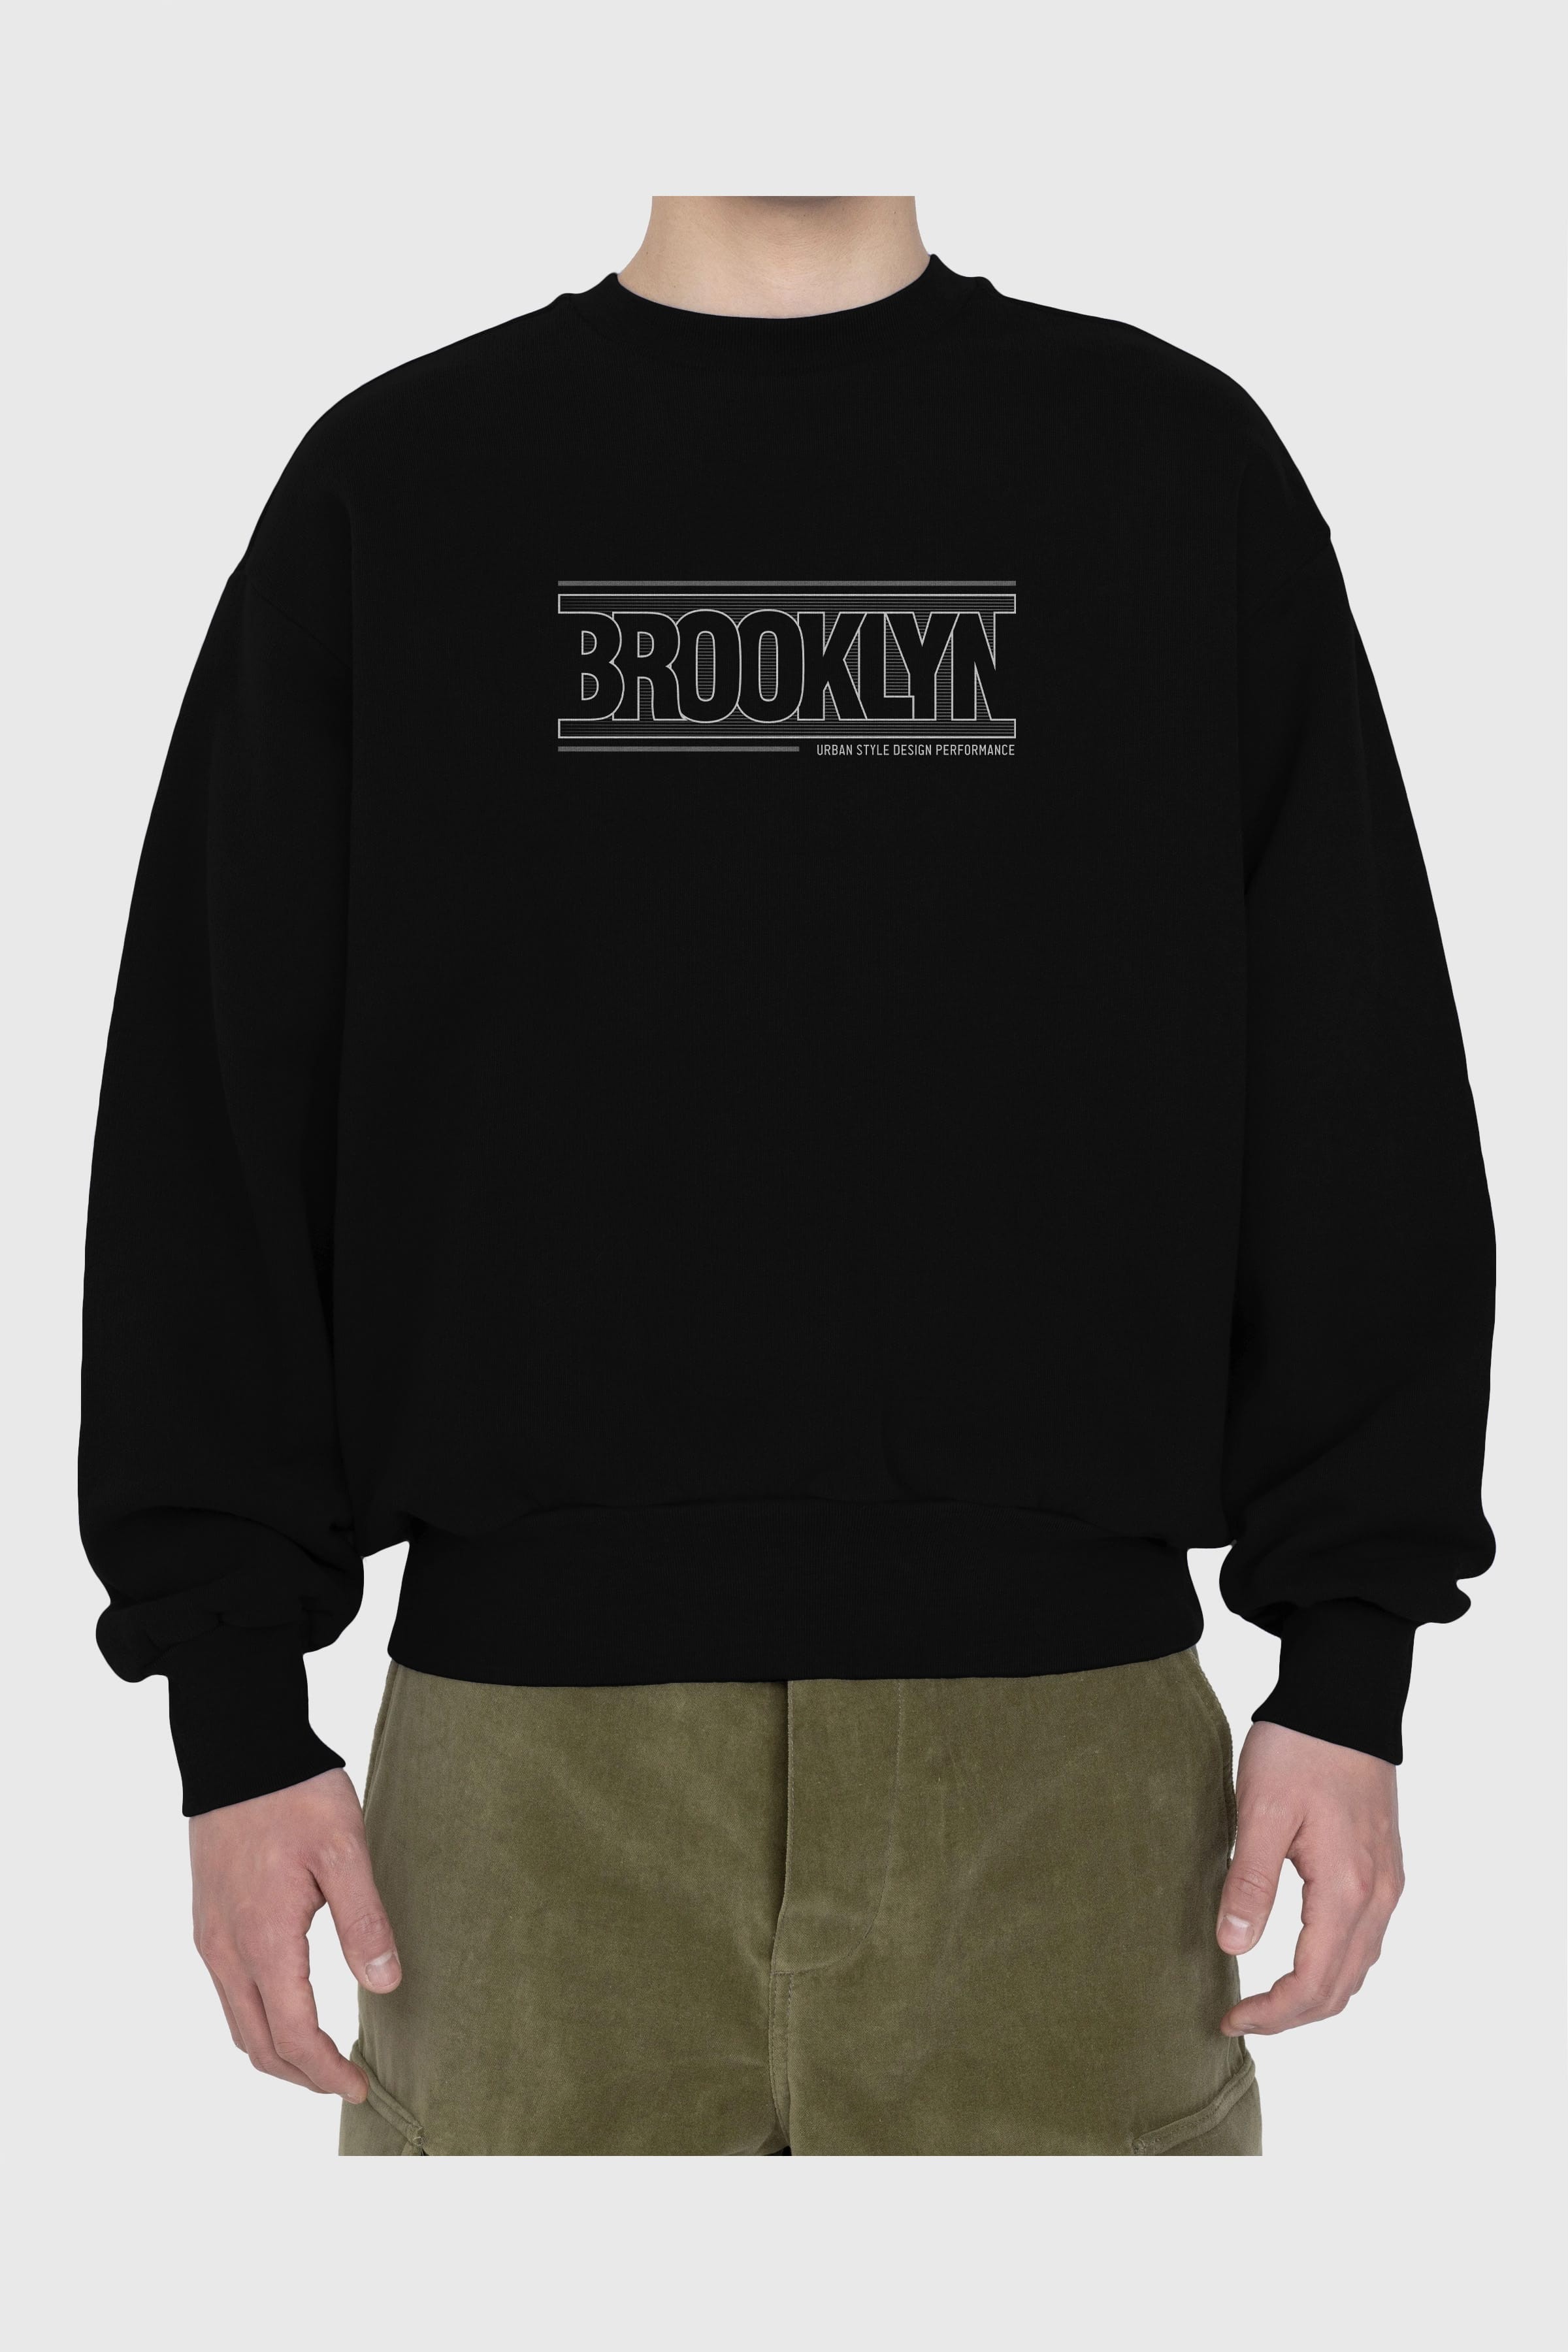 Brooklyn Ön Baskılı Oversize Sweatshirt Erkek Kadın Unisex